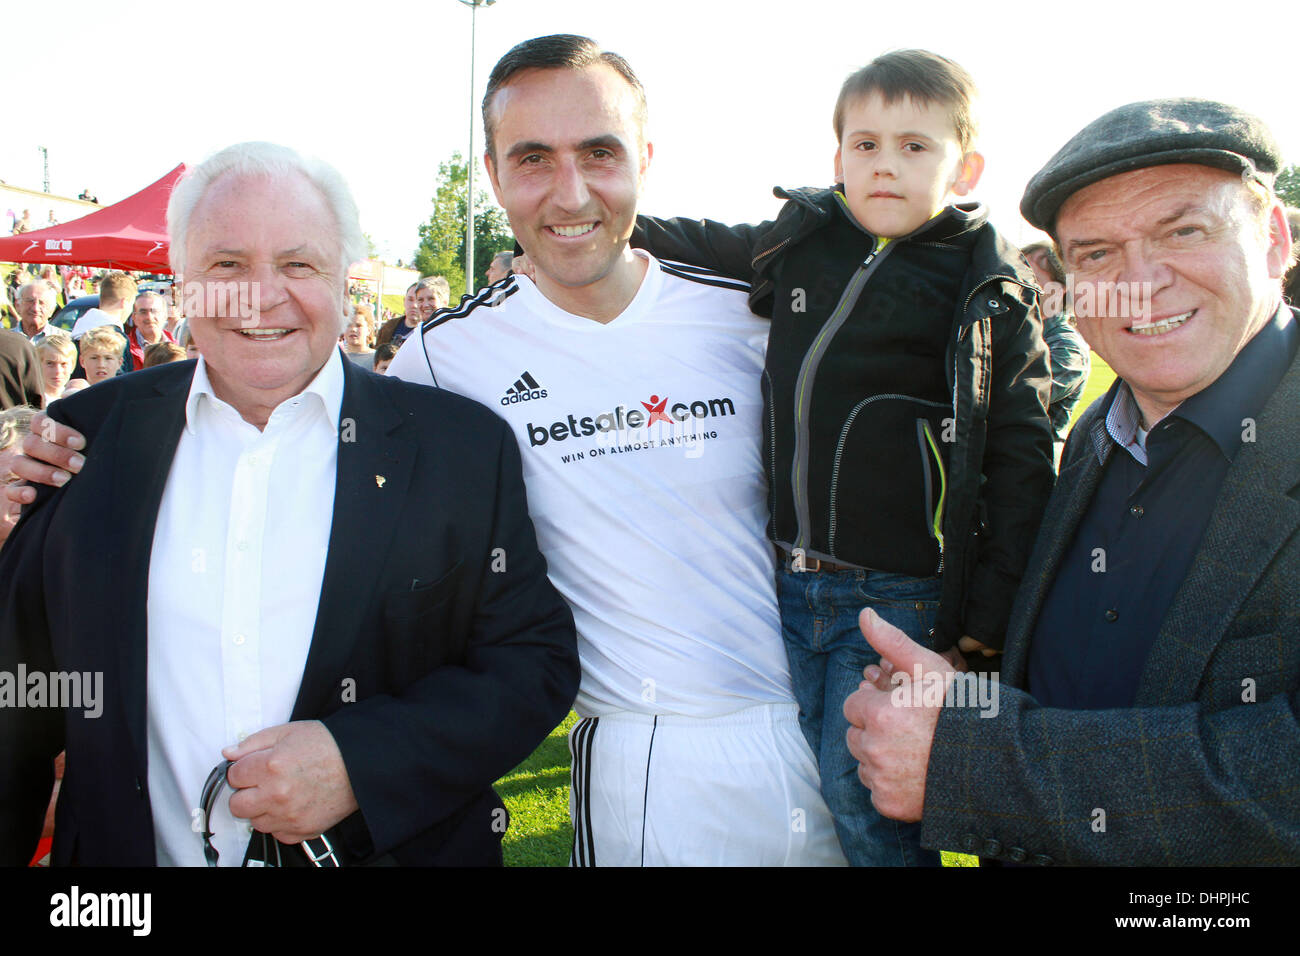 Eckart Witzigmann, Fabrice Kieffer avec son fils, invité Première Liga match de football de bienfaisance tenue à Jahnstadium Rosenheim, Allemagne - 14.05.12 Banque D'Images